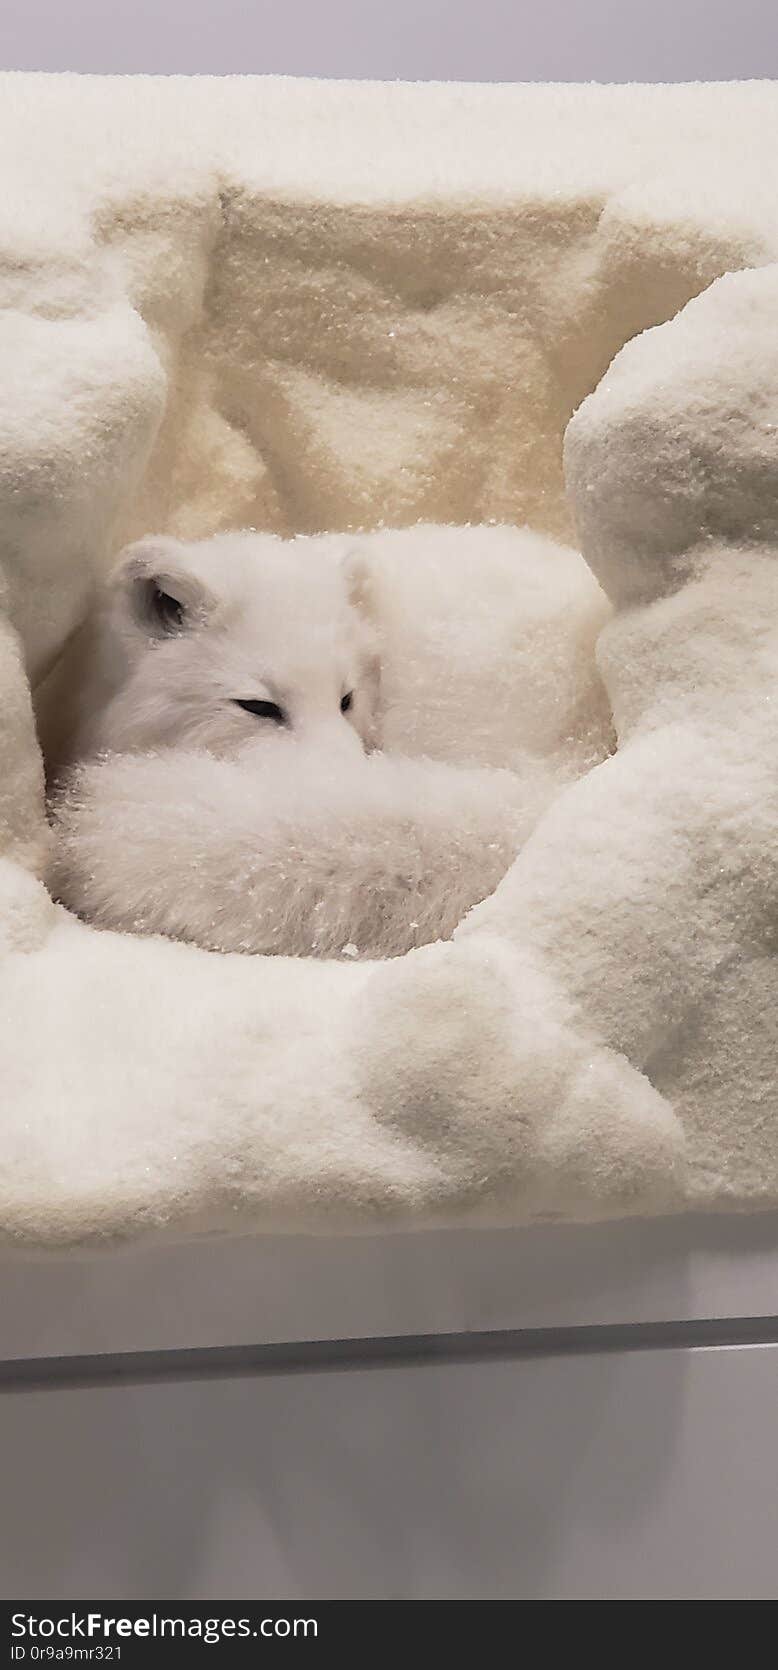 White fox. Cute, fake, fuzzy, grown